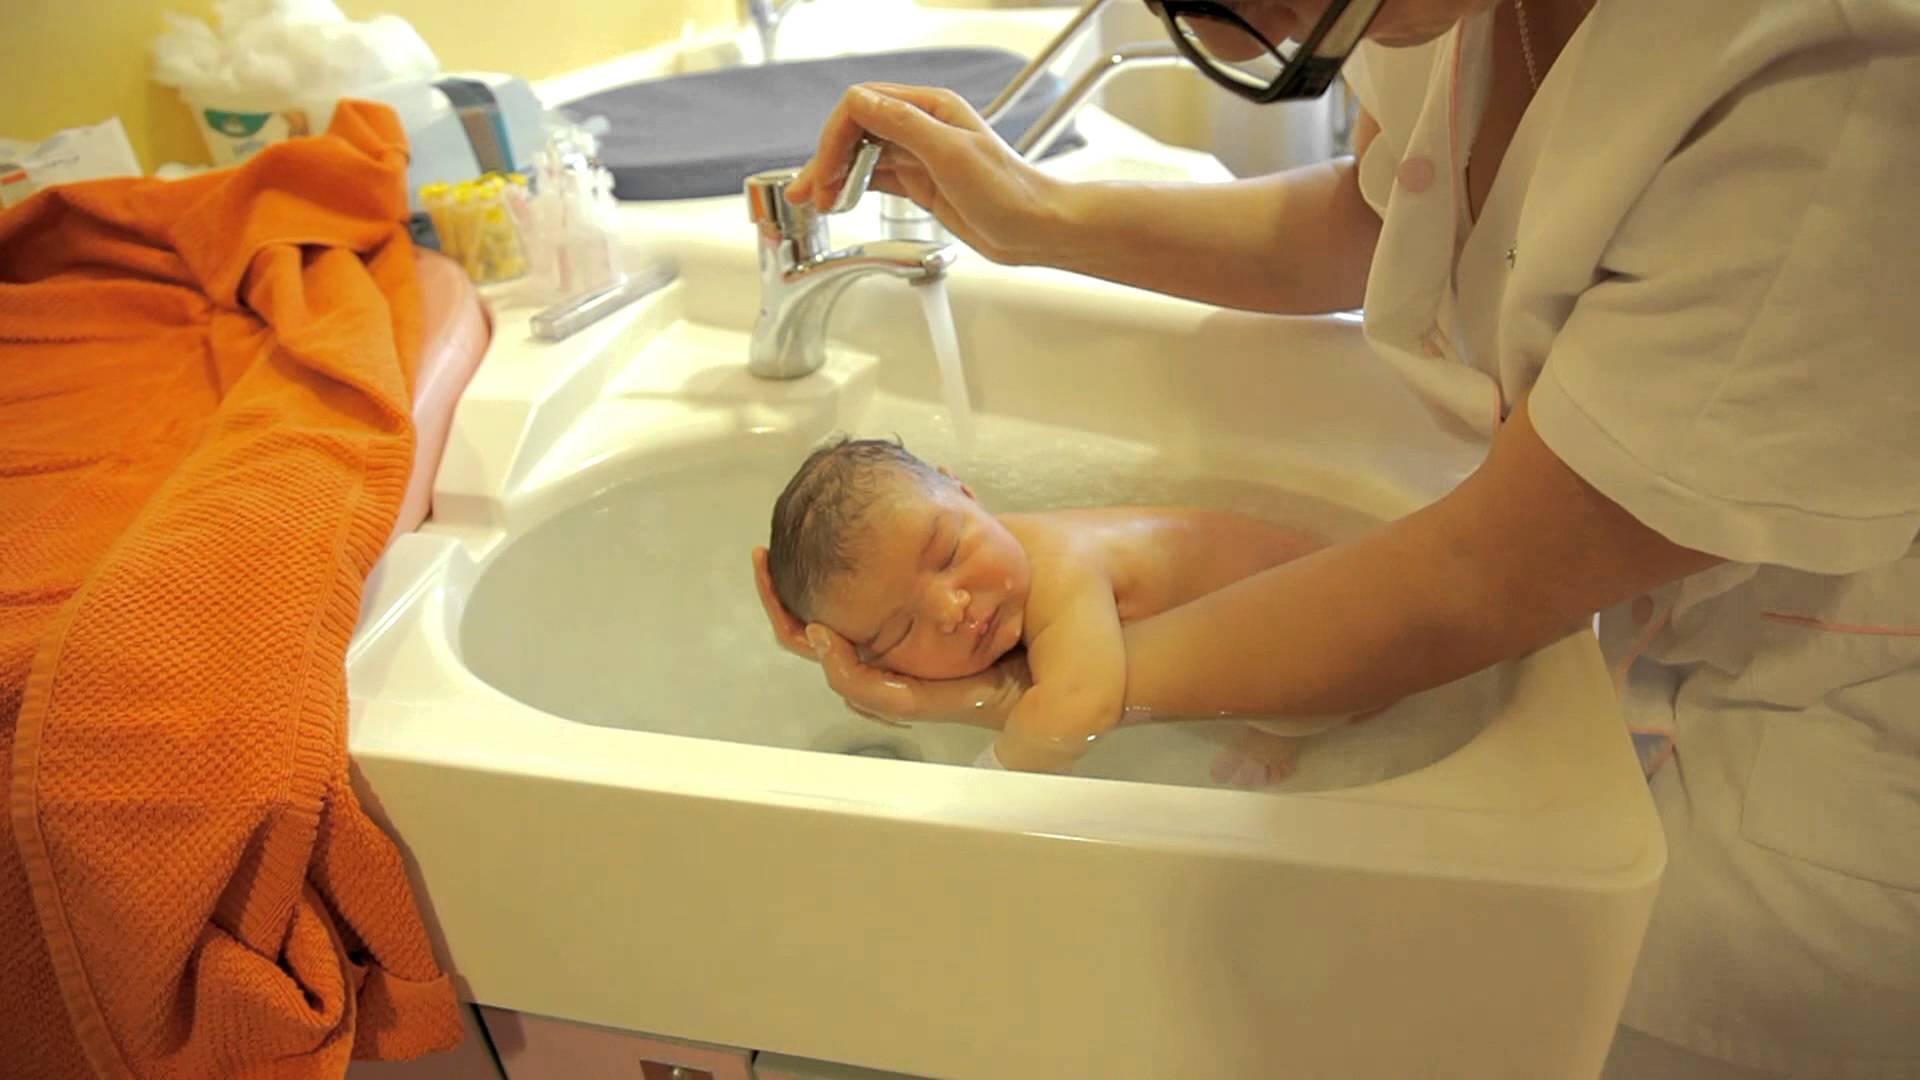 VIDEO: Técnica Maravilhosa Para Relaxamento De Um Bebé Durante o Banho